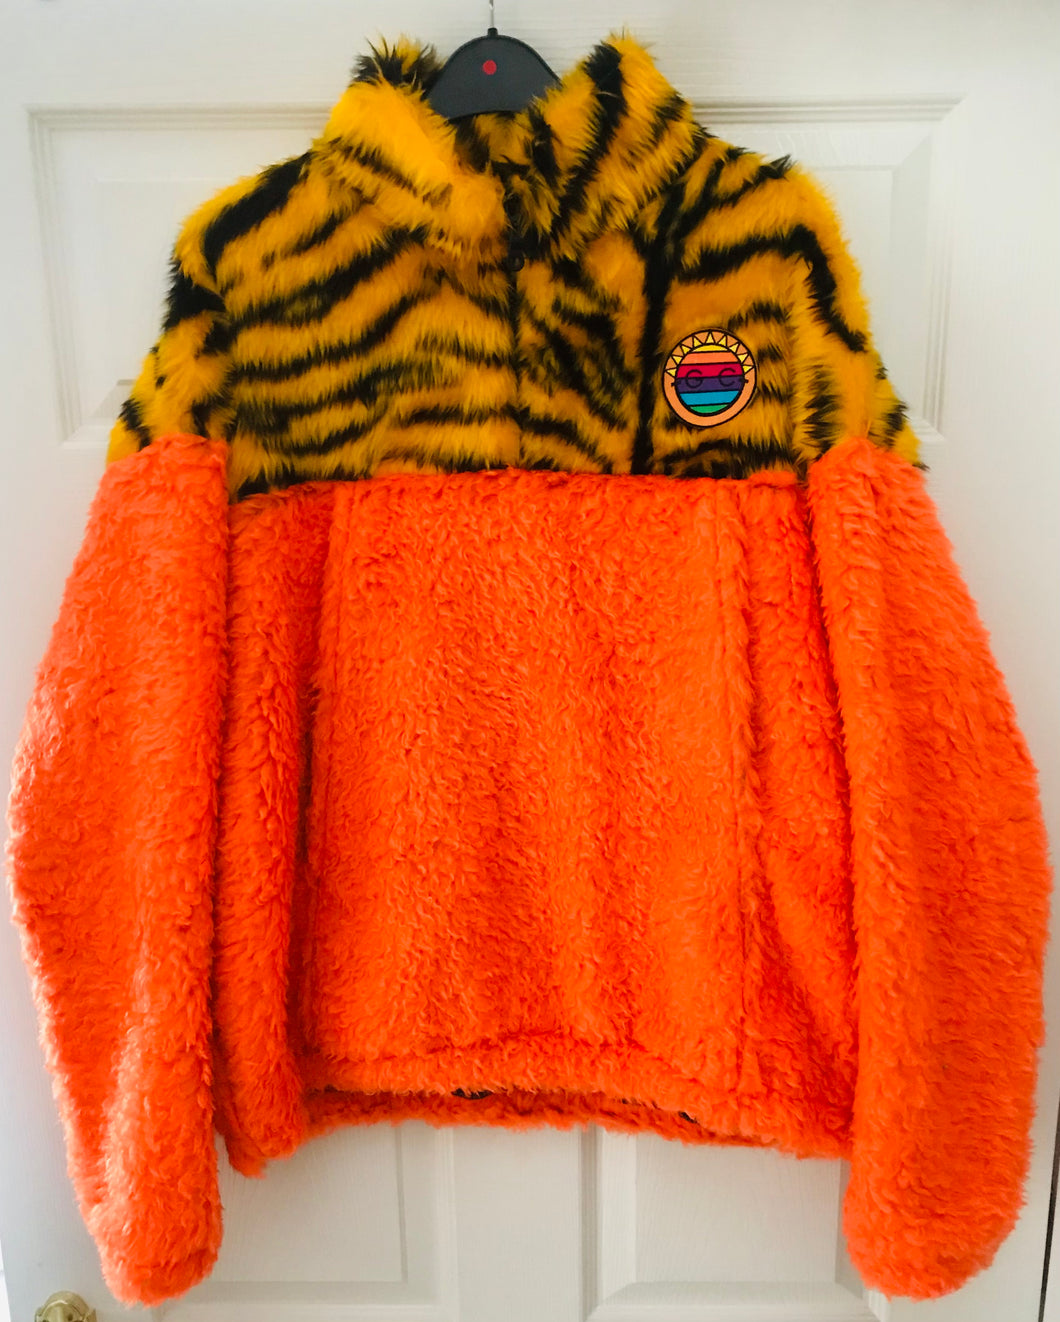 Get Crooked Custom Made Half Zip Fleece..Design Orange Teddy fur and Tiger Stripe Fleece